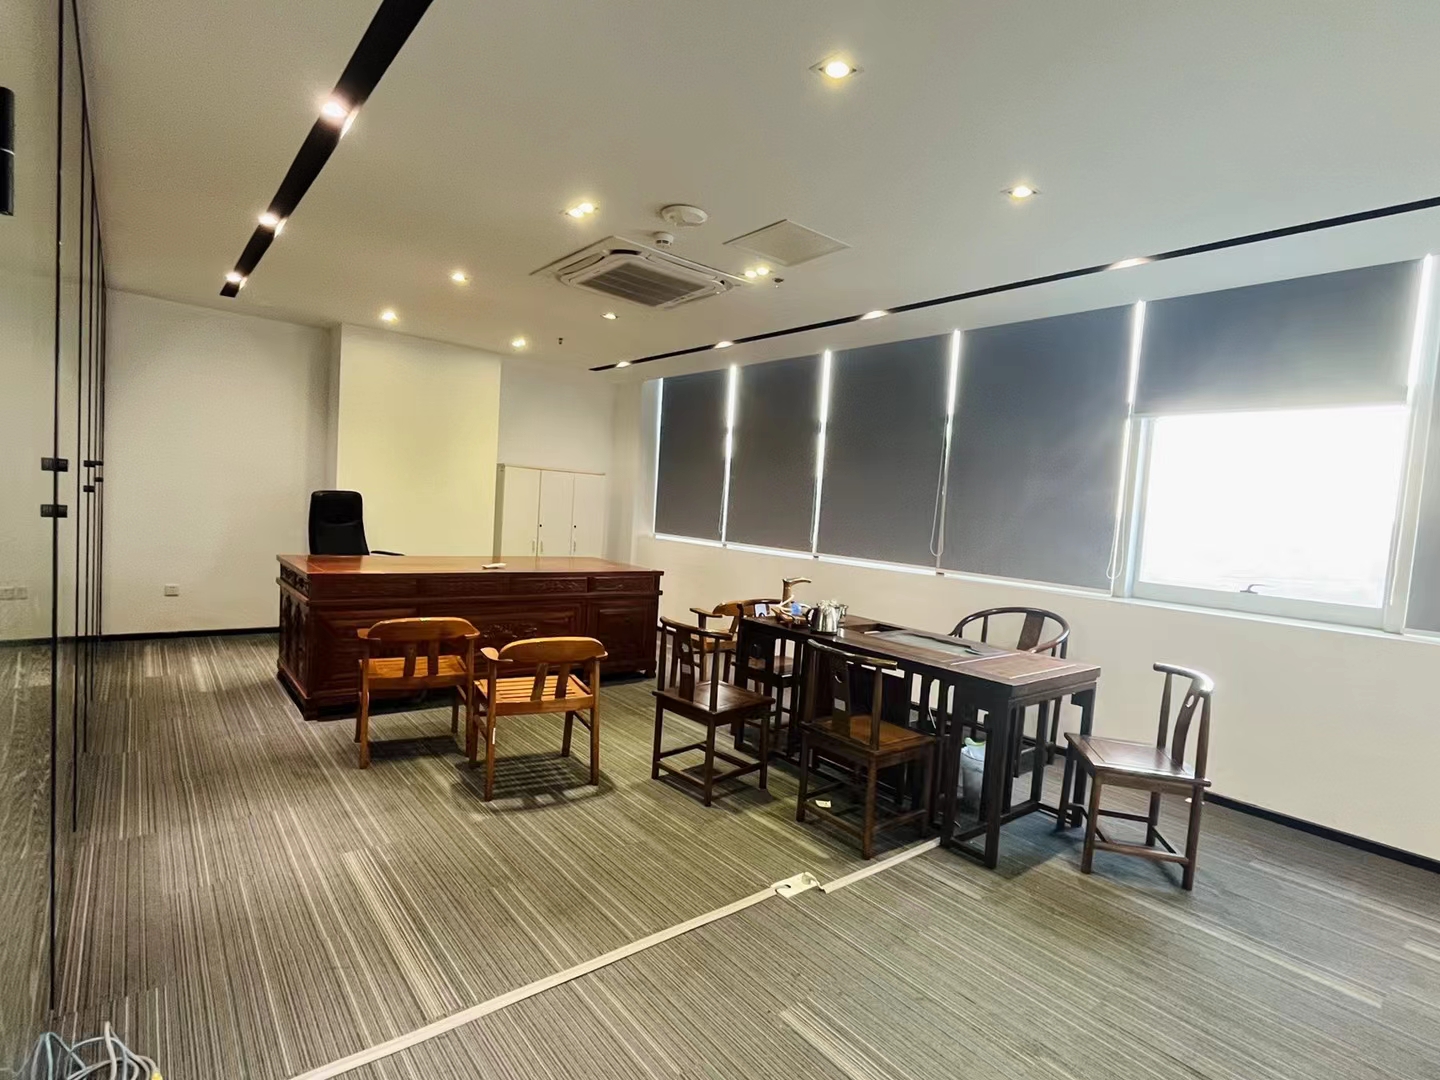 沙井中心地段甲级写字楼精装修1600平办公桌椅免费送